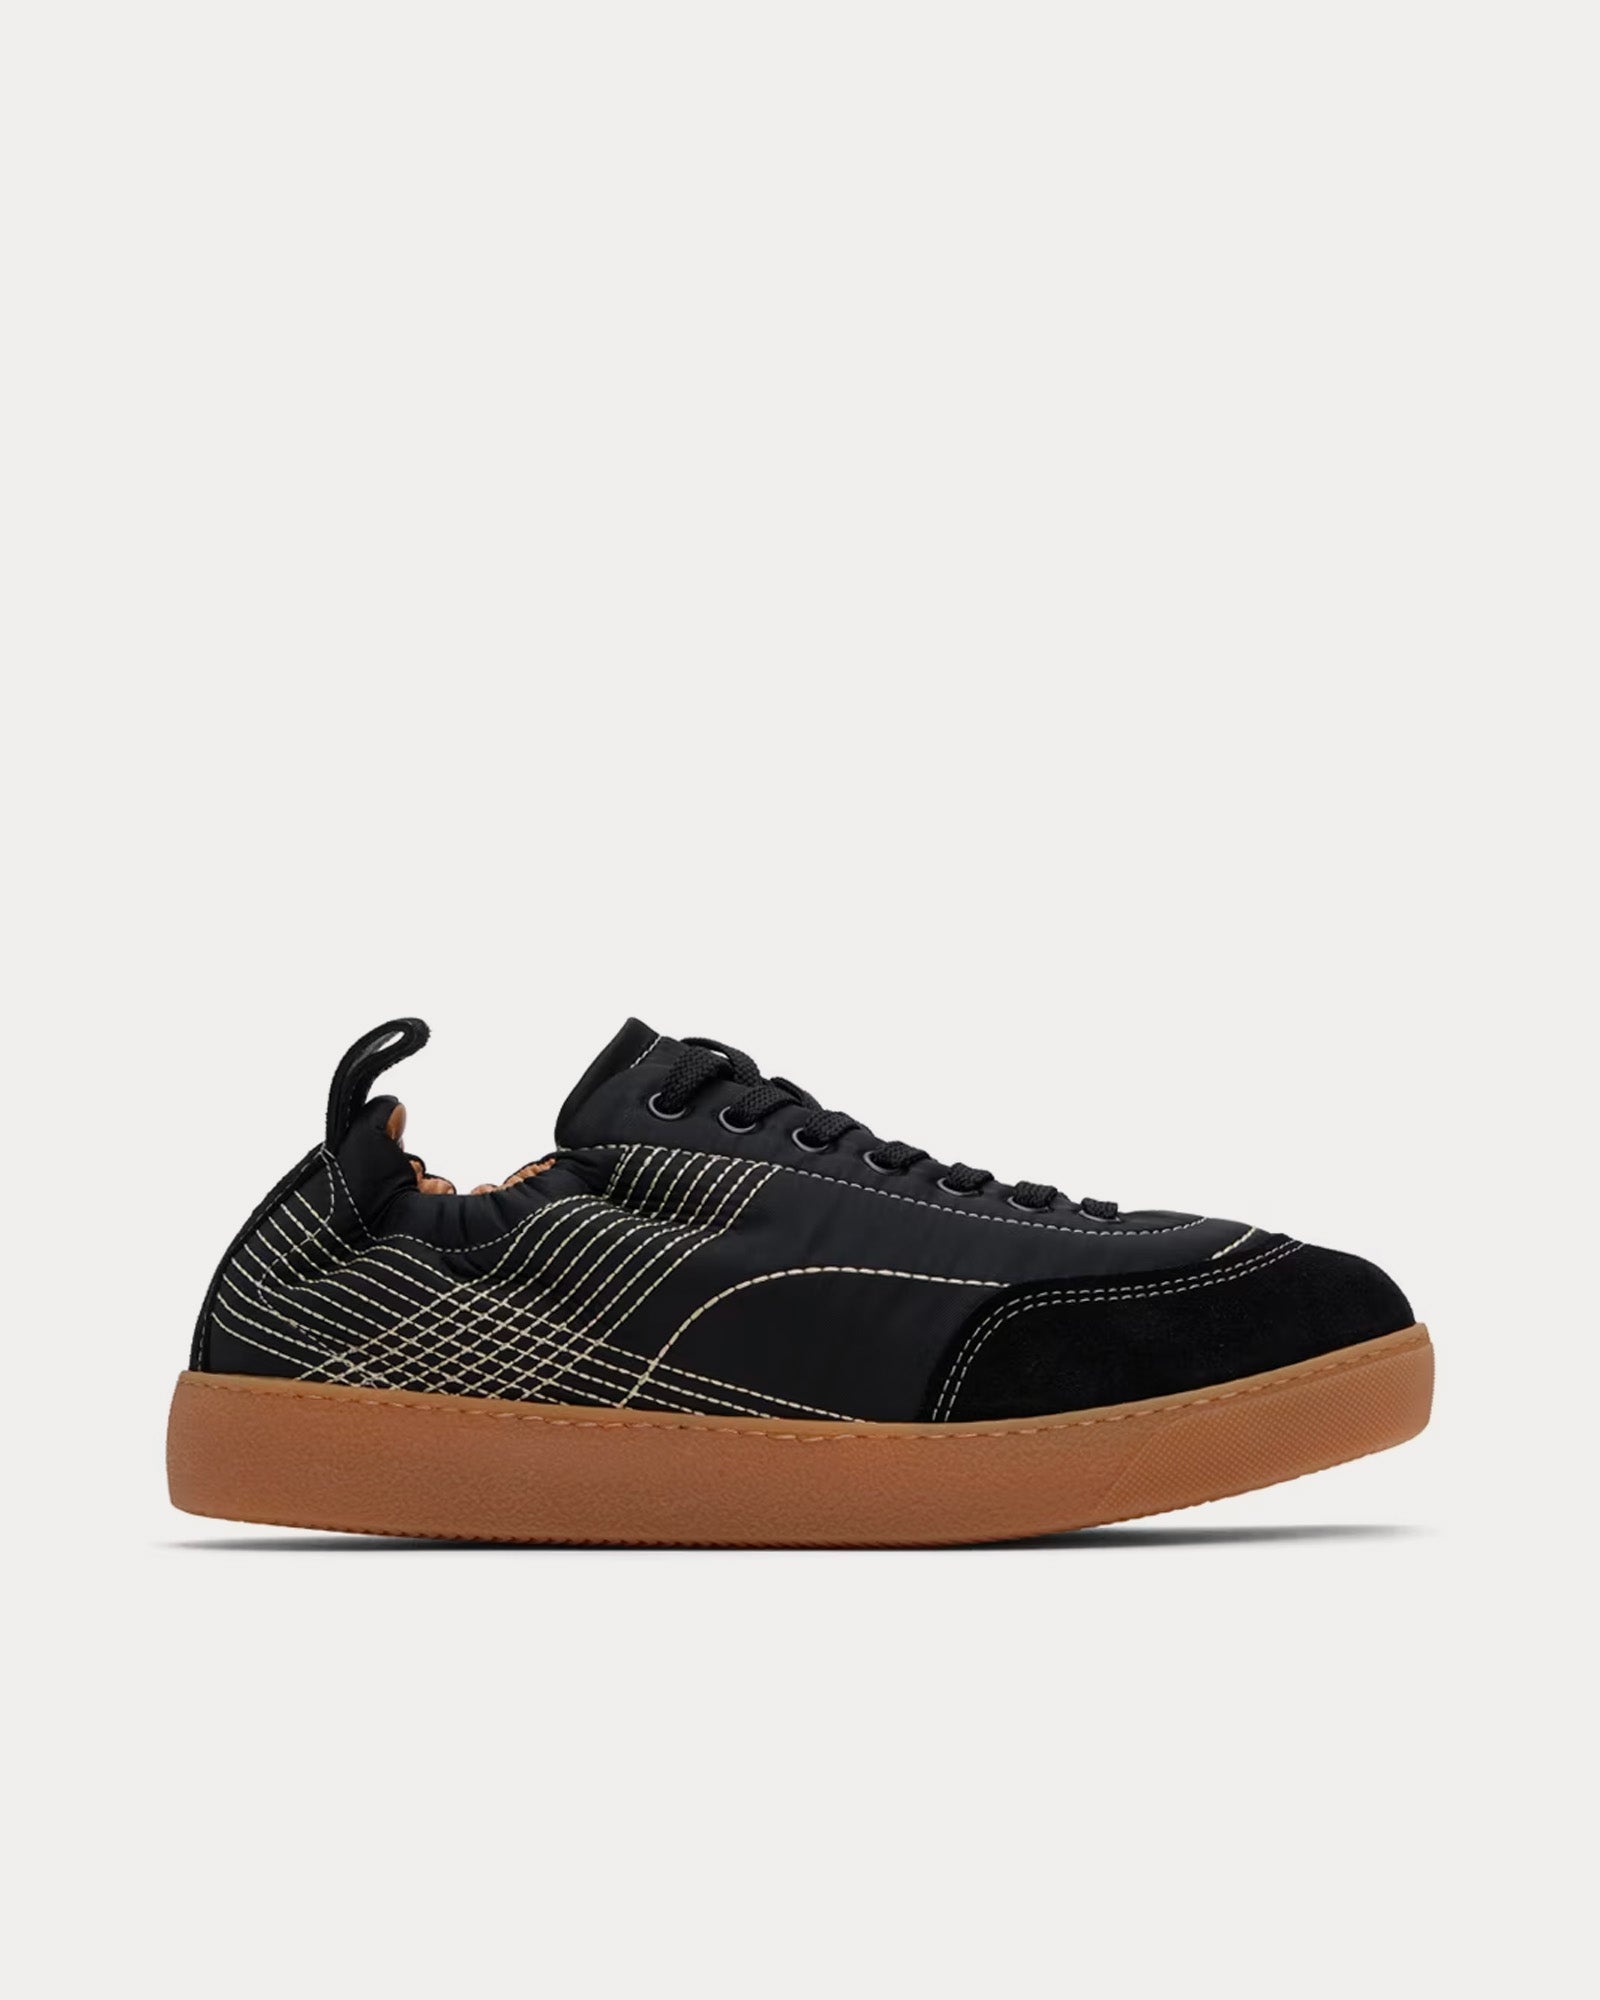 Dries Van Noten - Quilted Black Low Top Sneakers